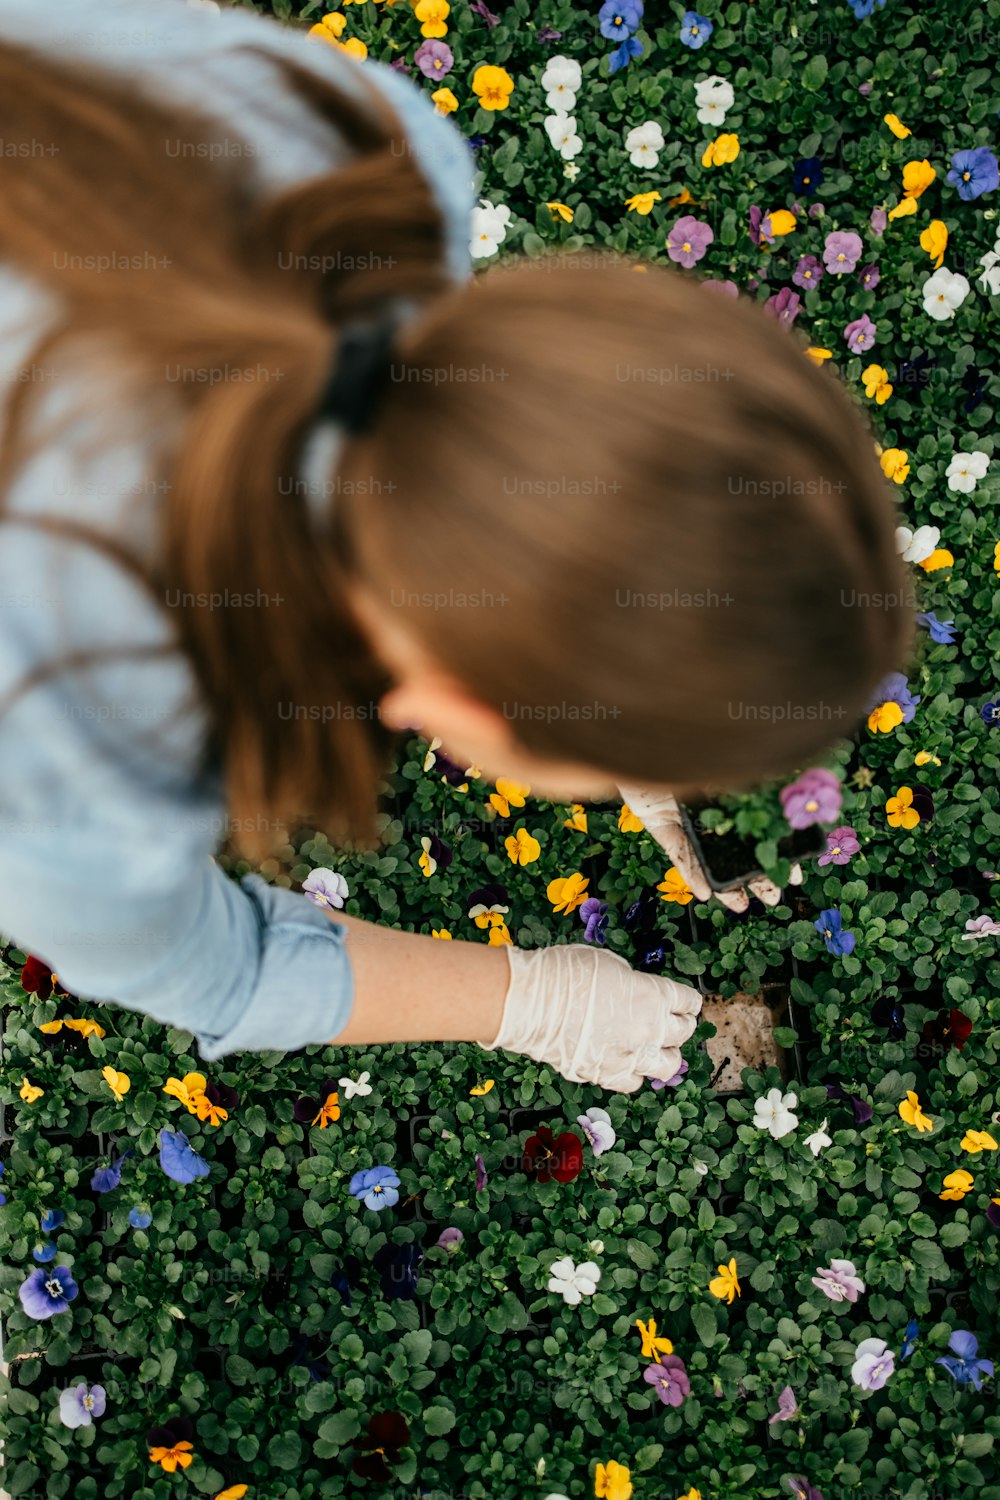 Giovane donna adulta felice e positiva che lavora in serra e si diverte in bellissimi fiori.